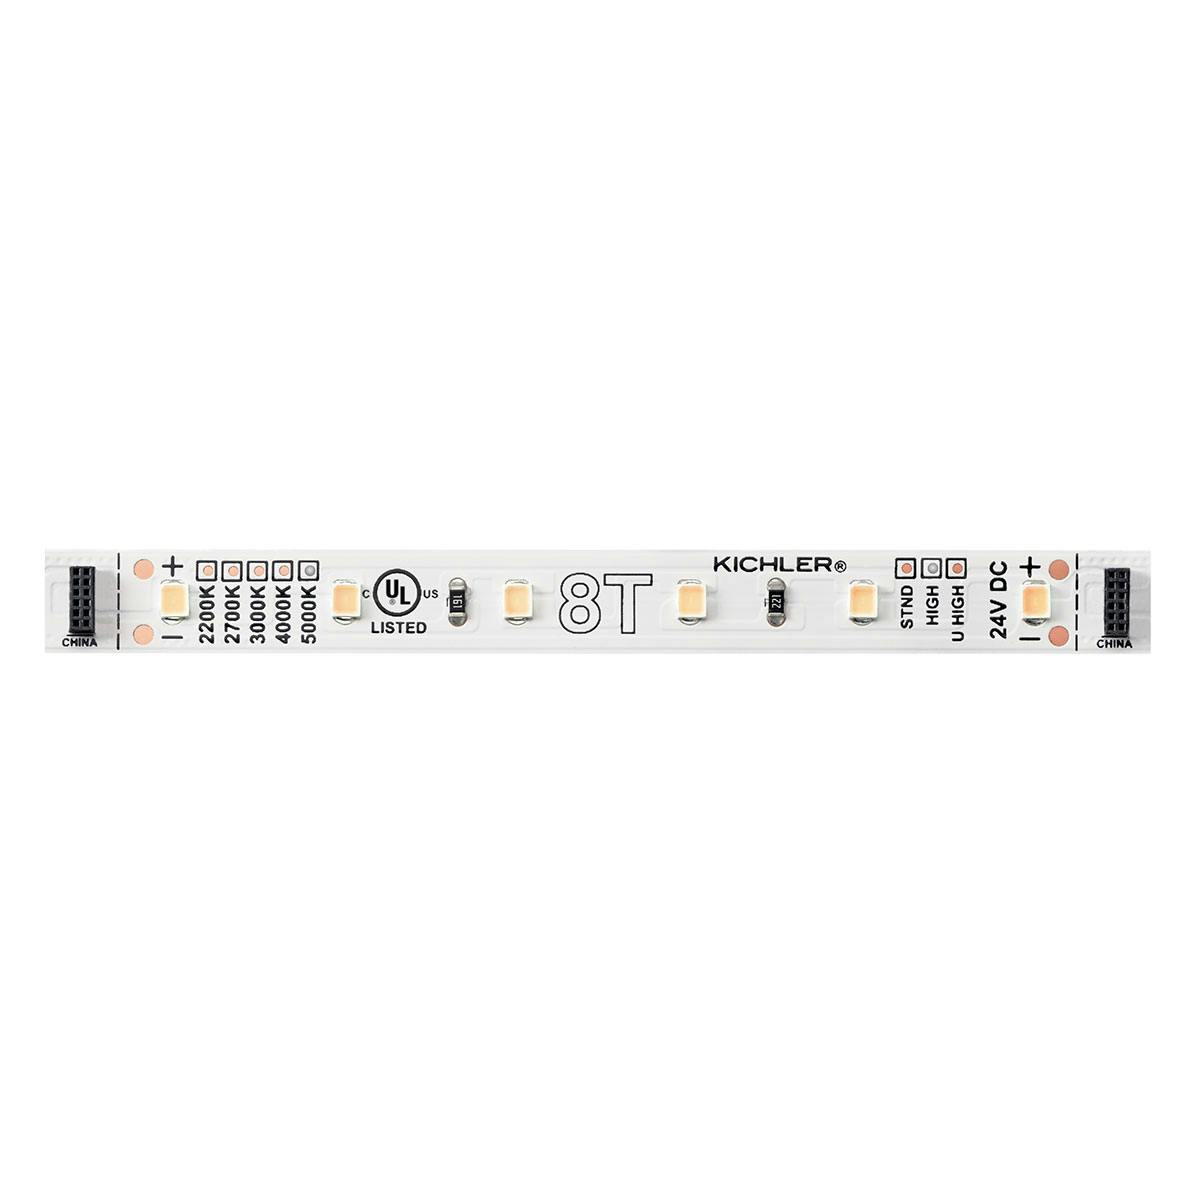 8T 4" 2700K 24V Standard LED Tape Light on a white background